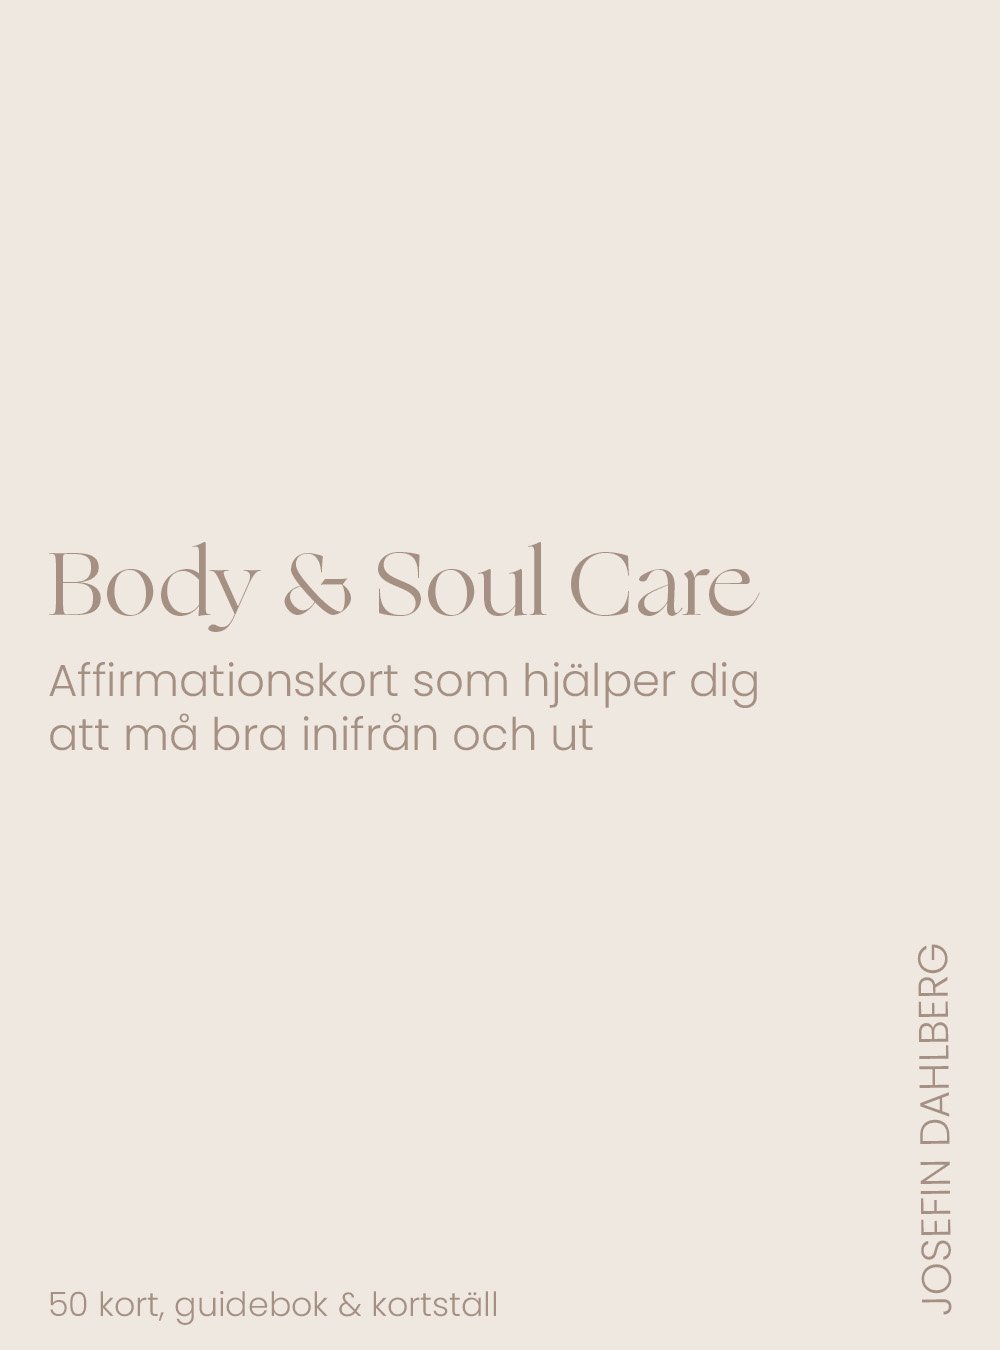 Body & Soul Care Affirmationskort